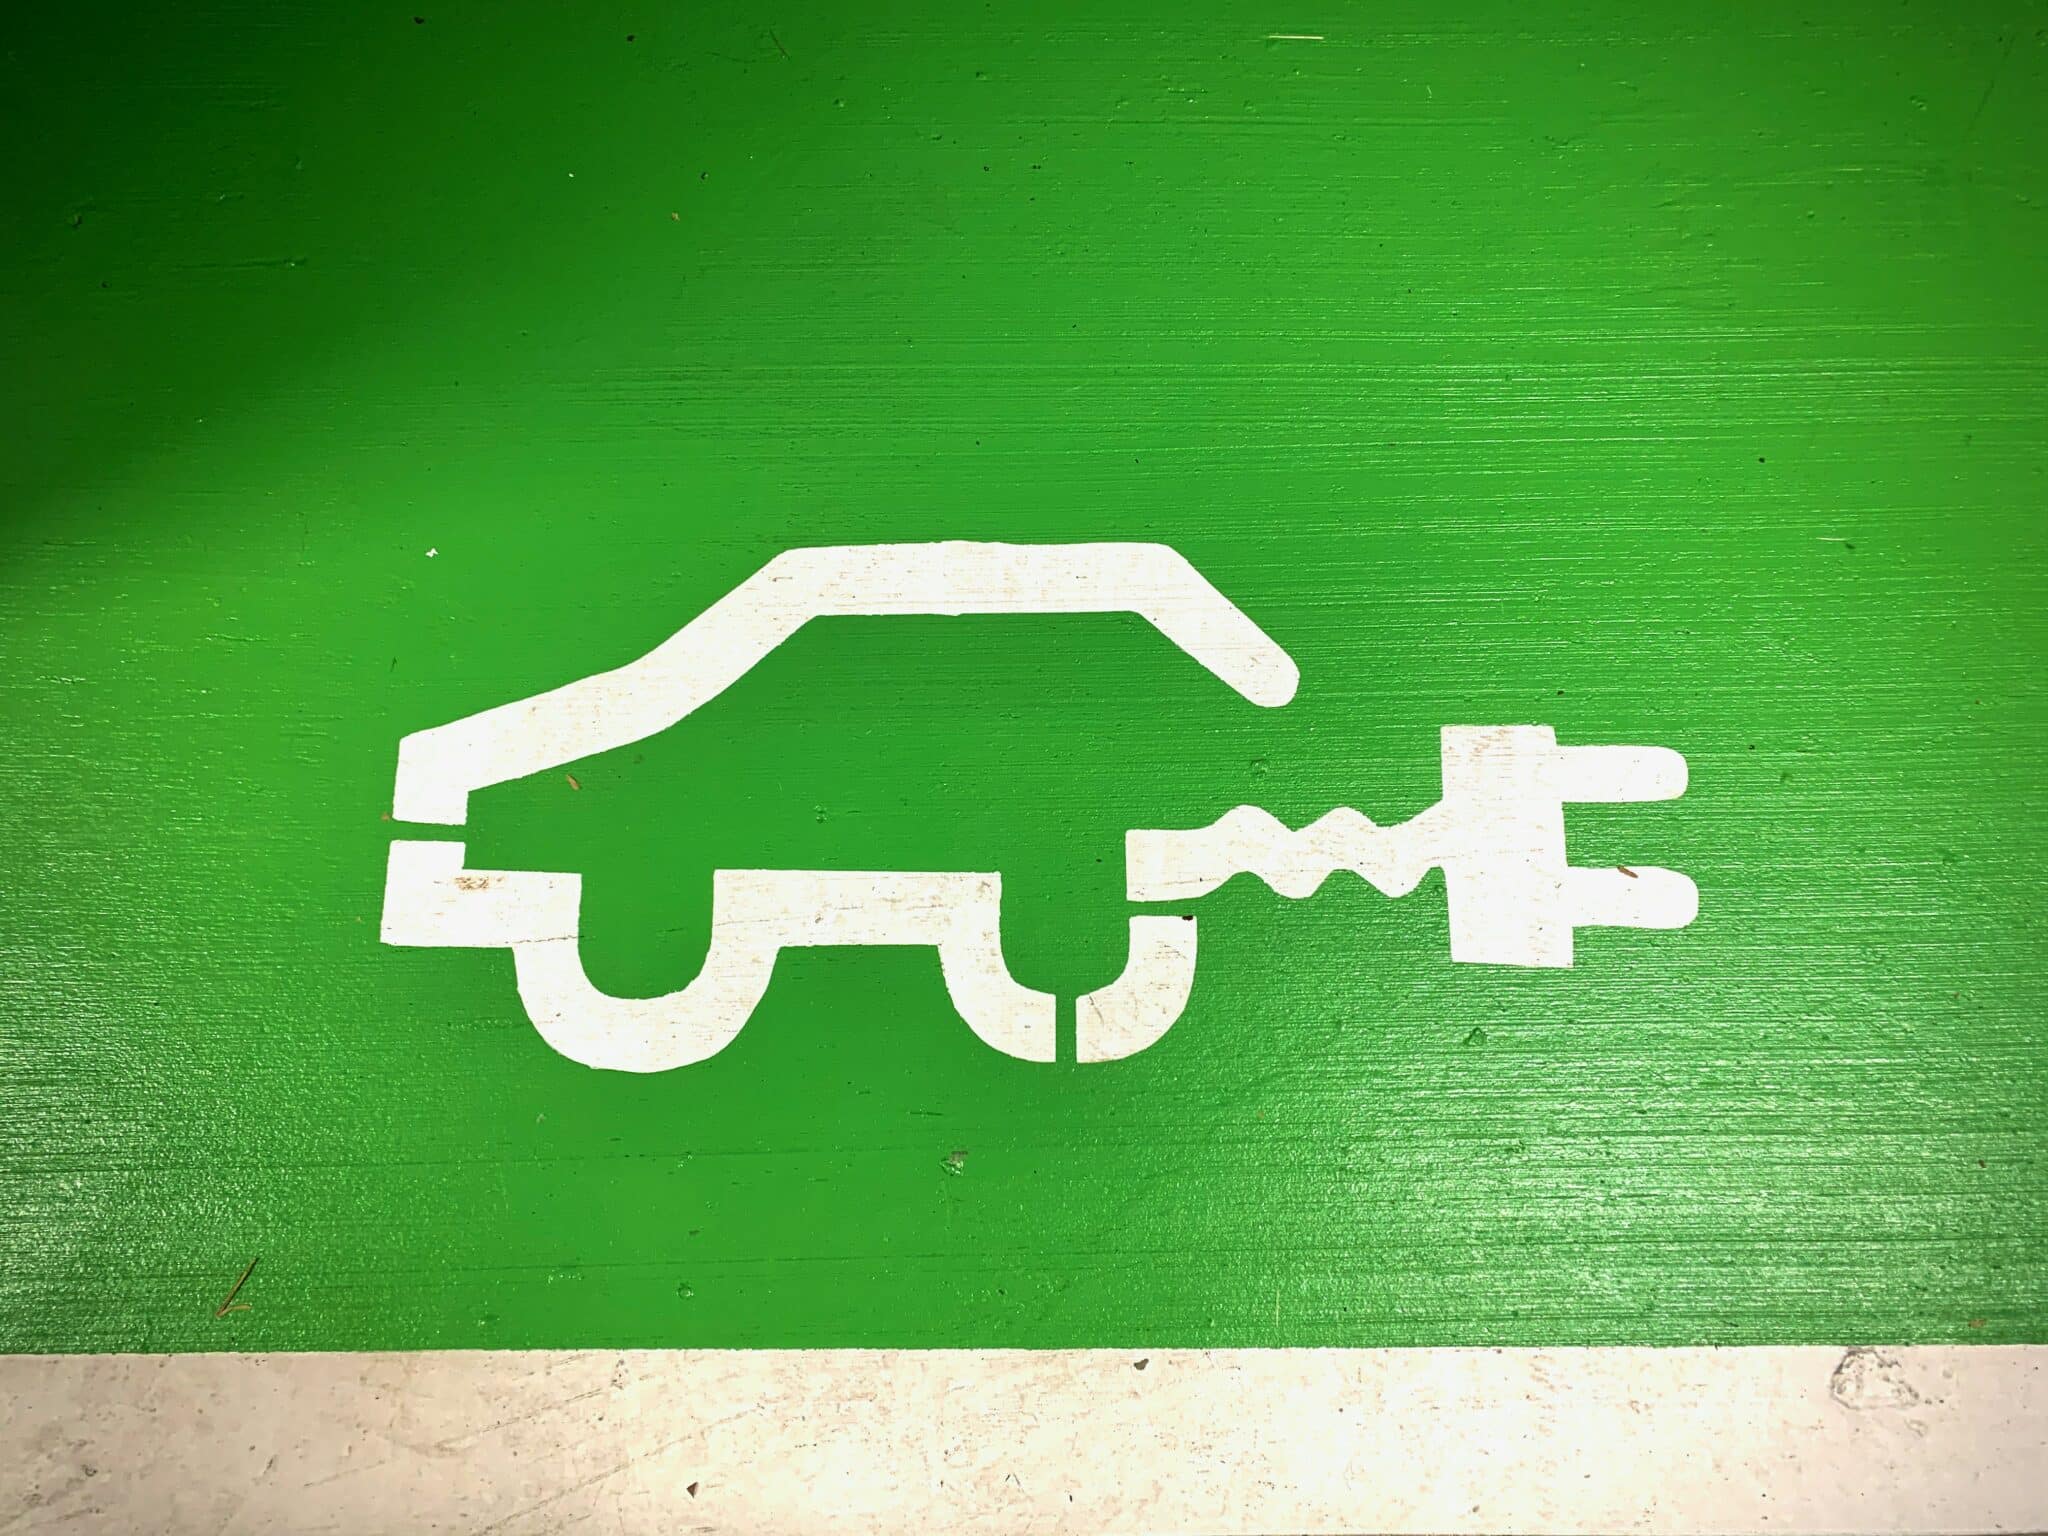 découvrez tout sur les voitures électriques : performances, économie d'énergie et impact environnemental. trouvez la voiture électrique idéale pour vous.